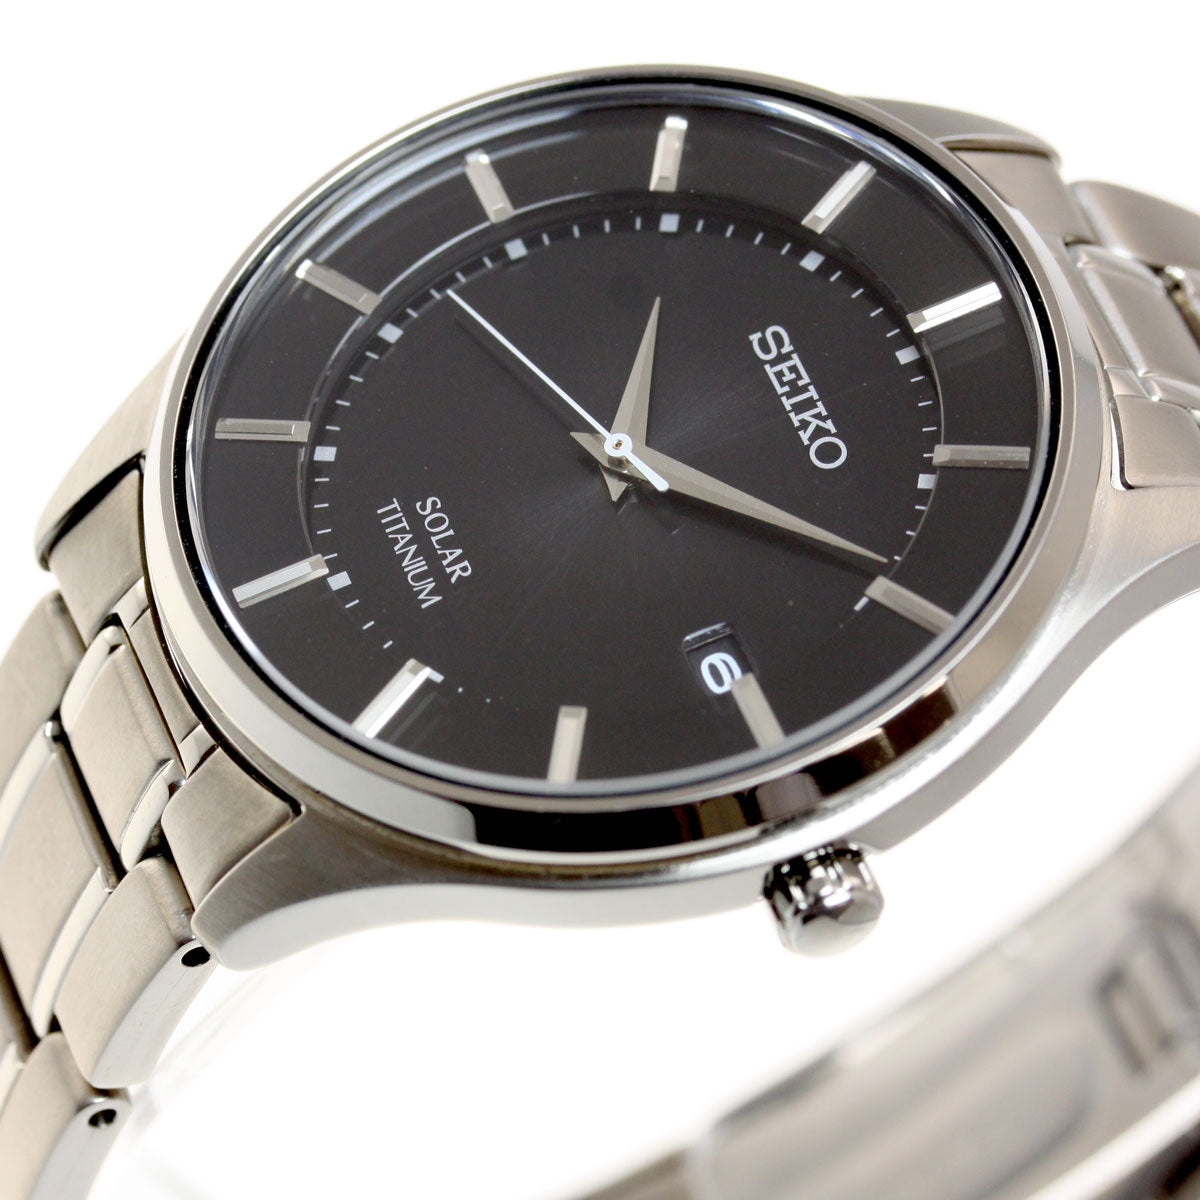 セイコー セレクション SEIKO SELECTION ソーラー 腕時計 ペアモデル メンズ SBPX103